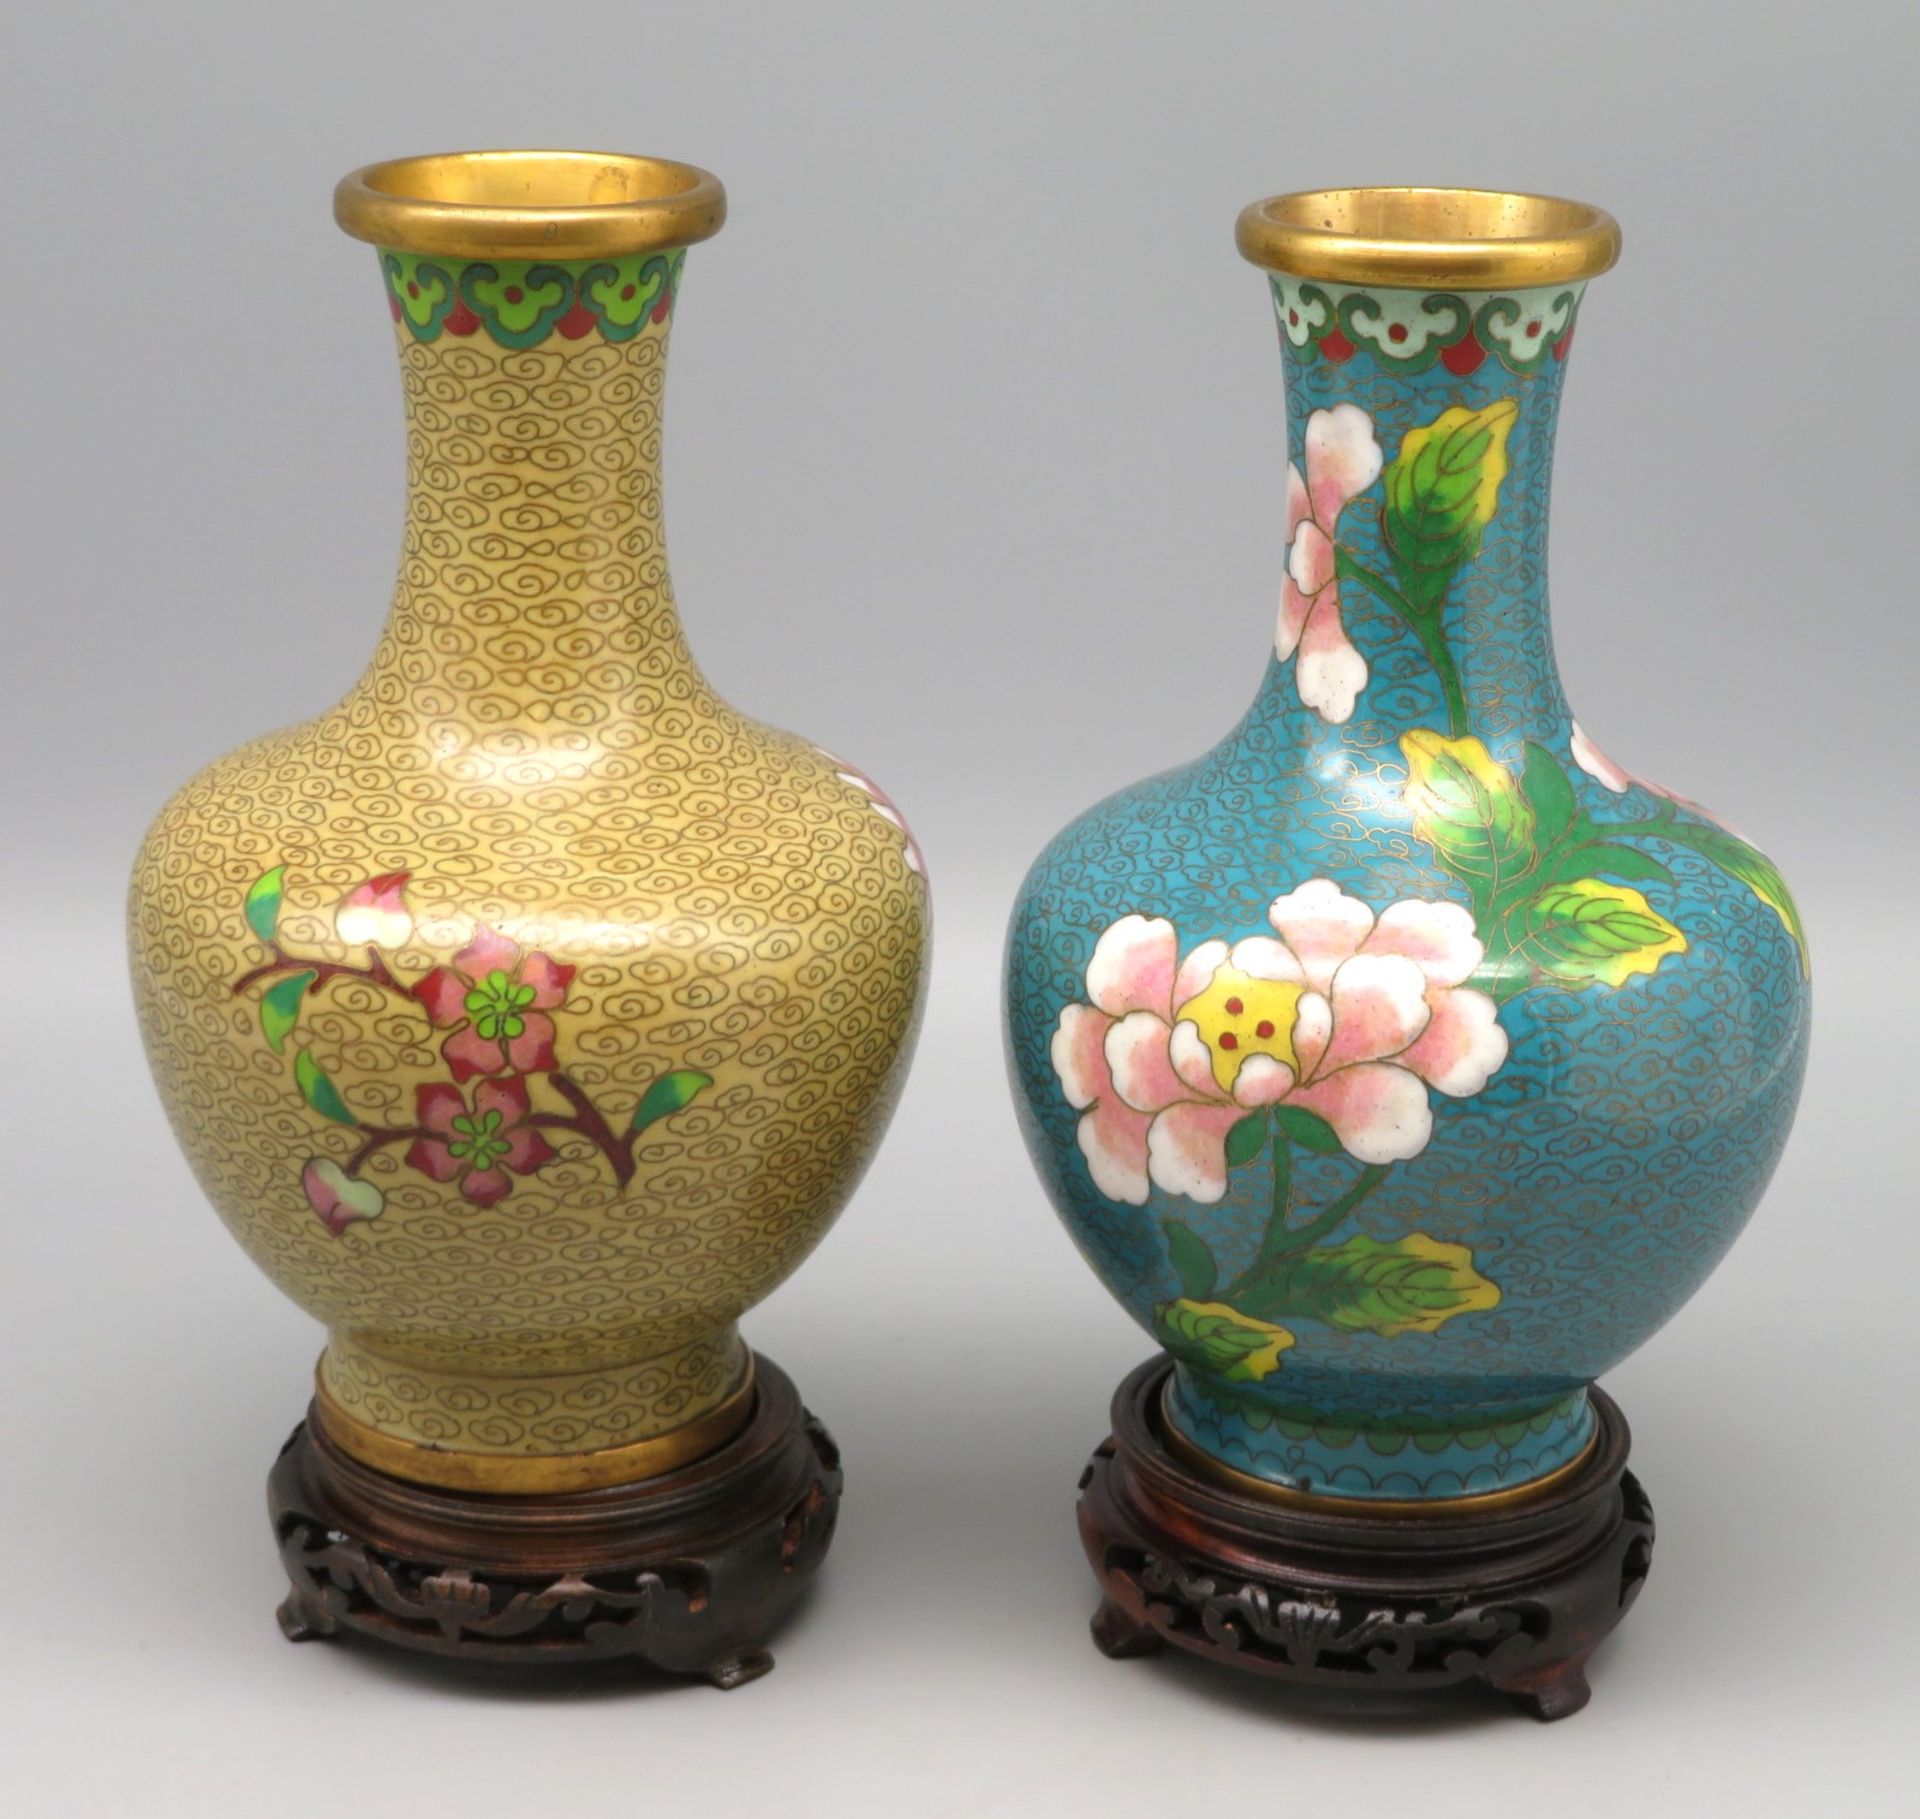 2 Cloisonné Vasen, China, 1. Hälfte 20. Jahrhundert, farbiger Zellenschmelz, geschnitzte Holzsockel - Bild 2 aus 2